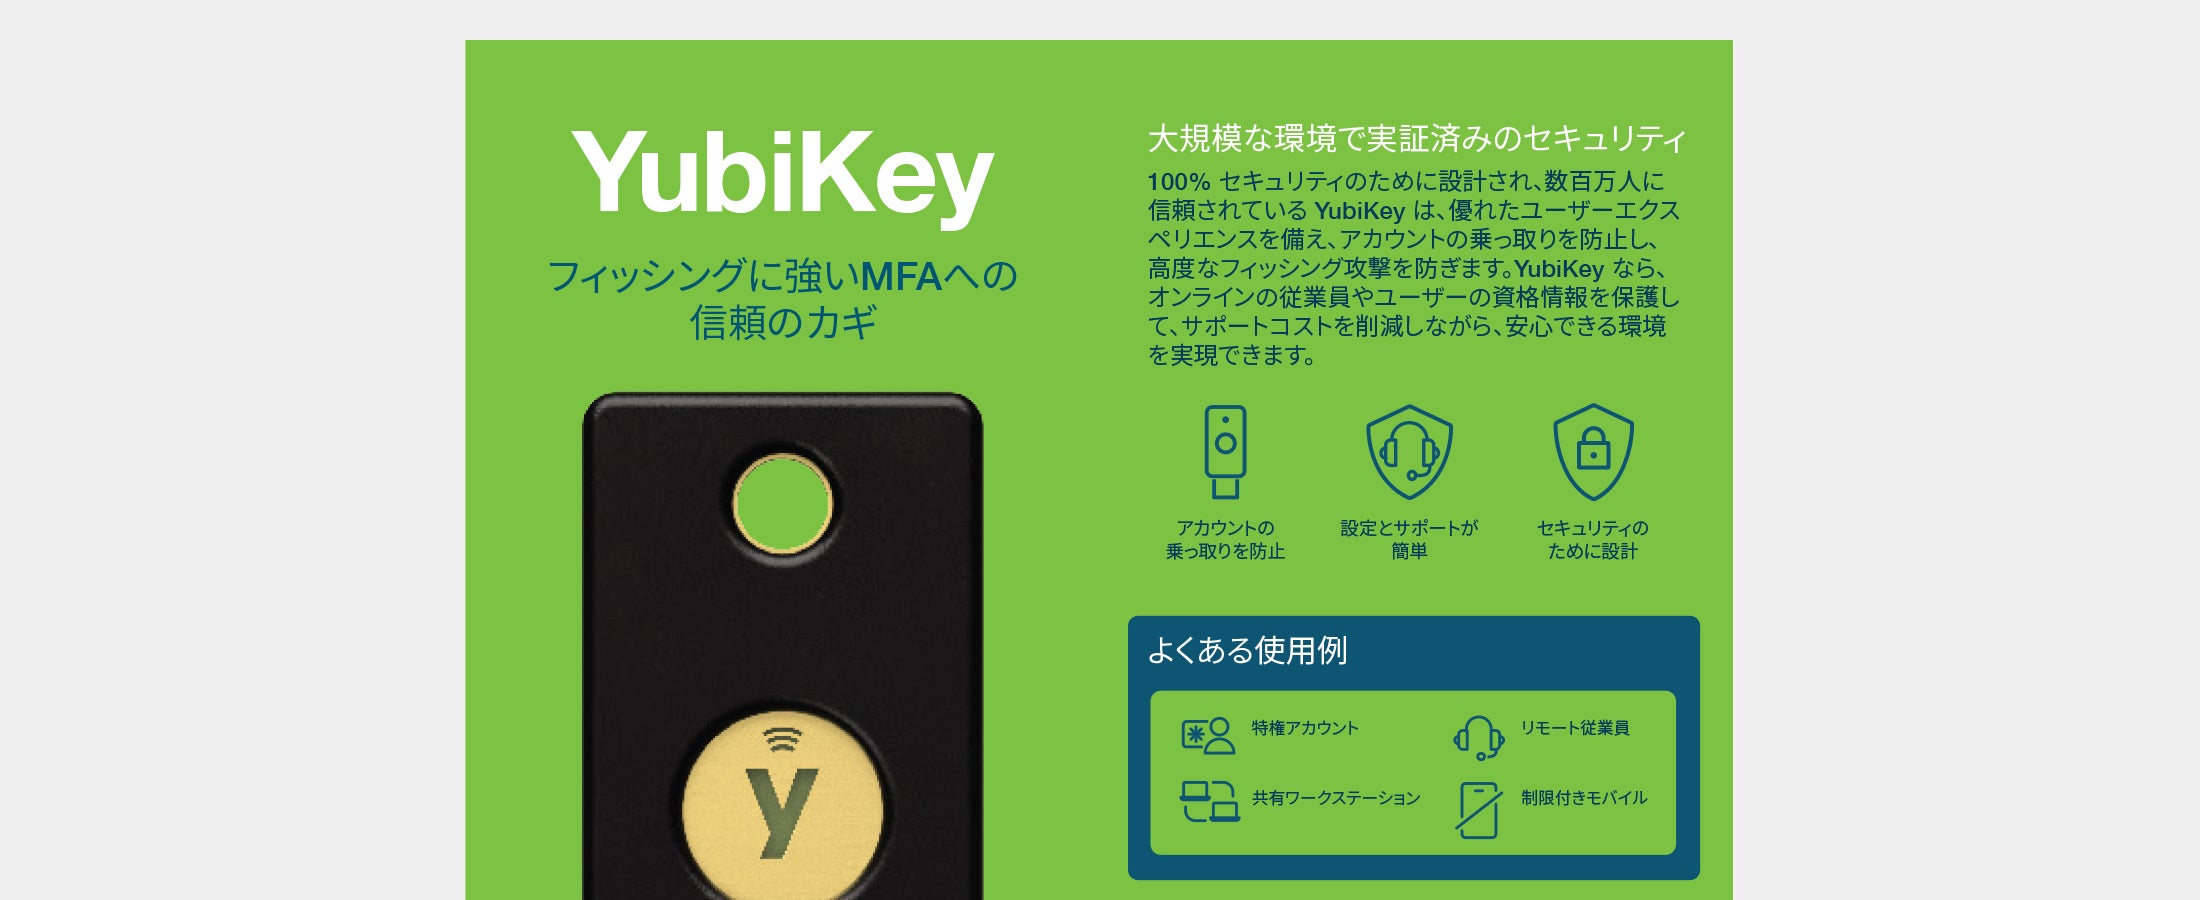 YubiKey Japanese digital flyer